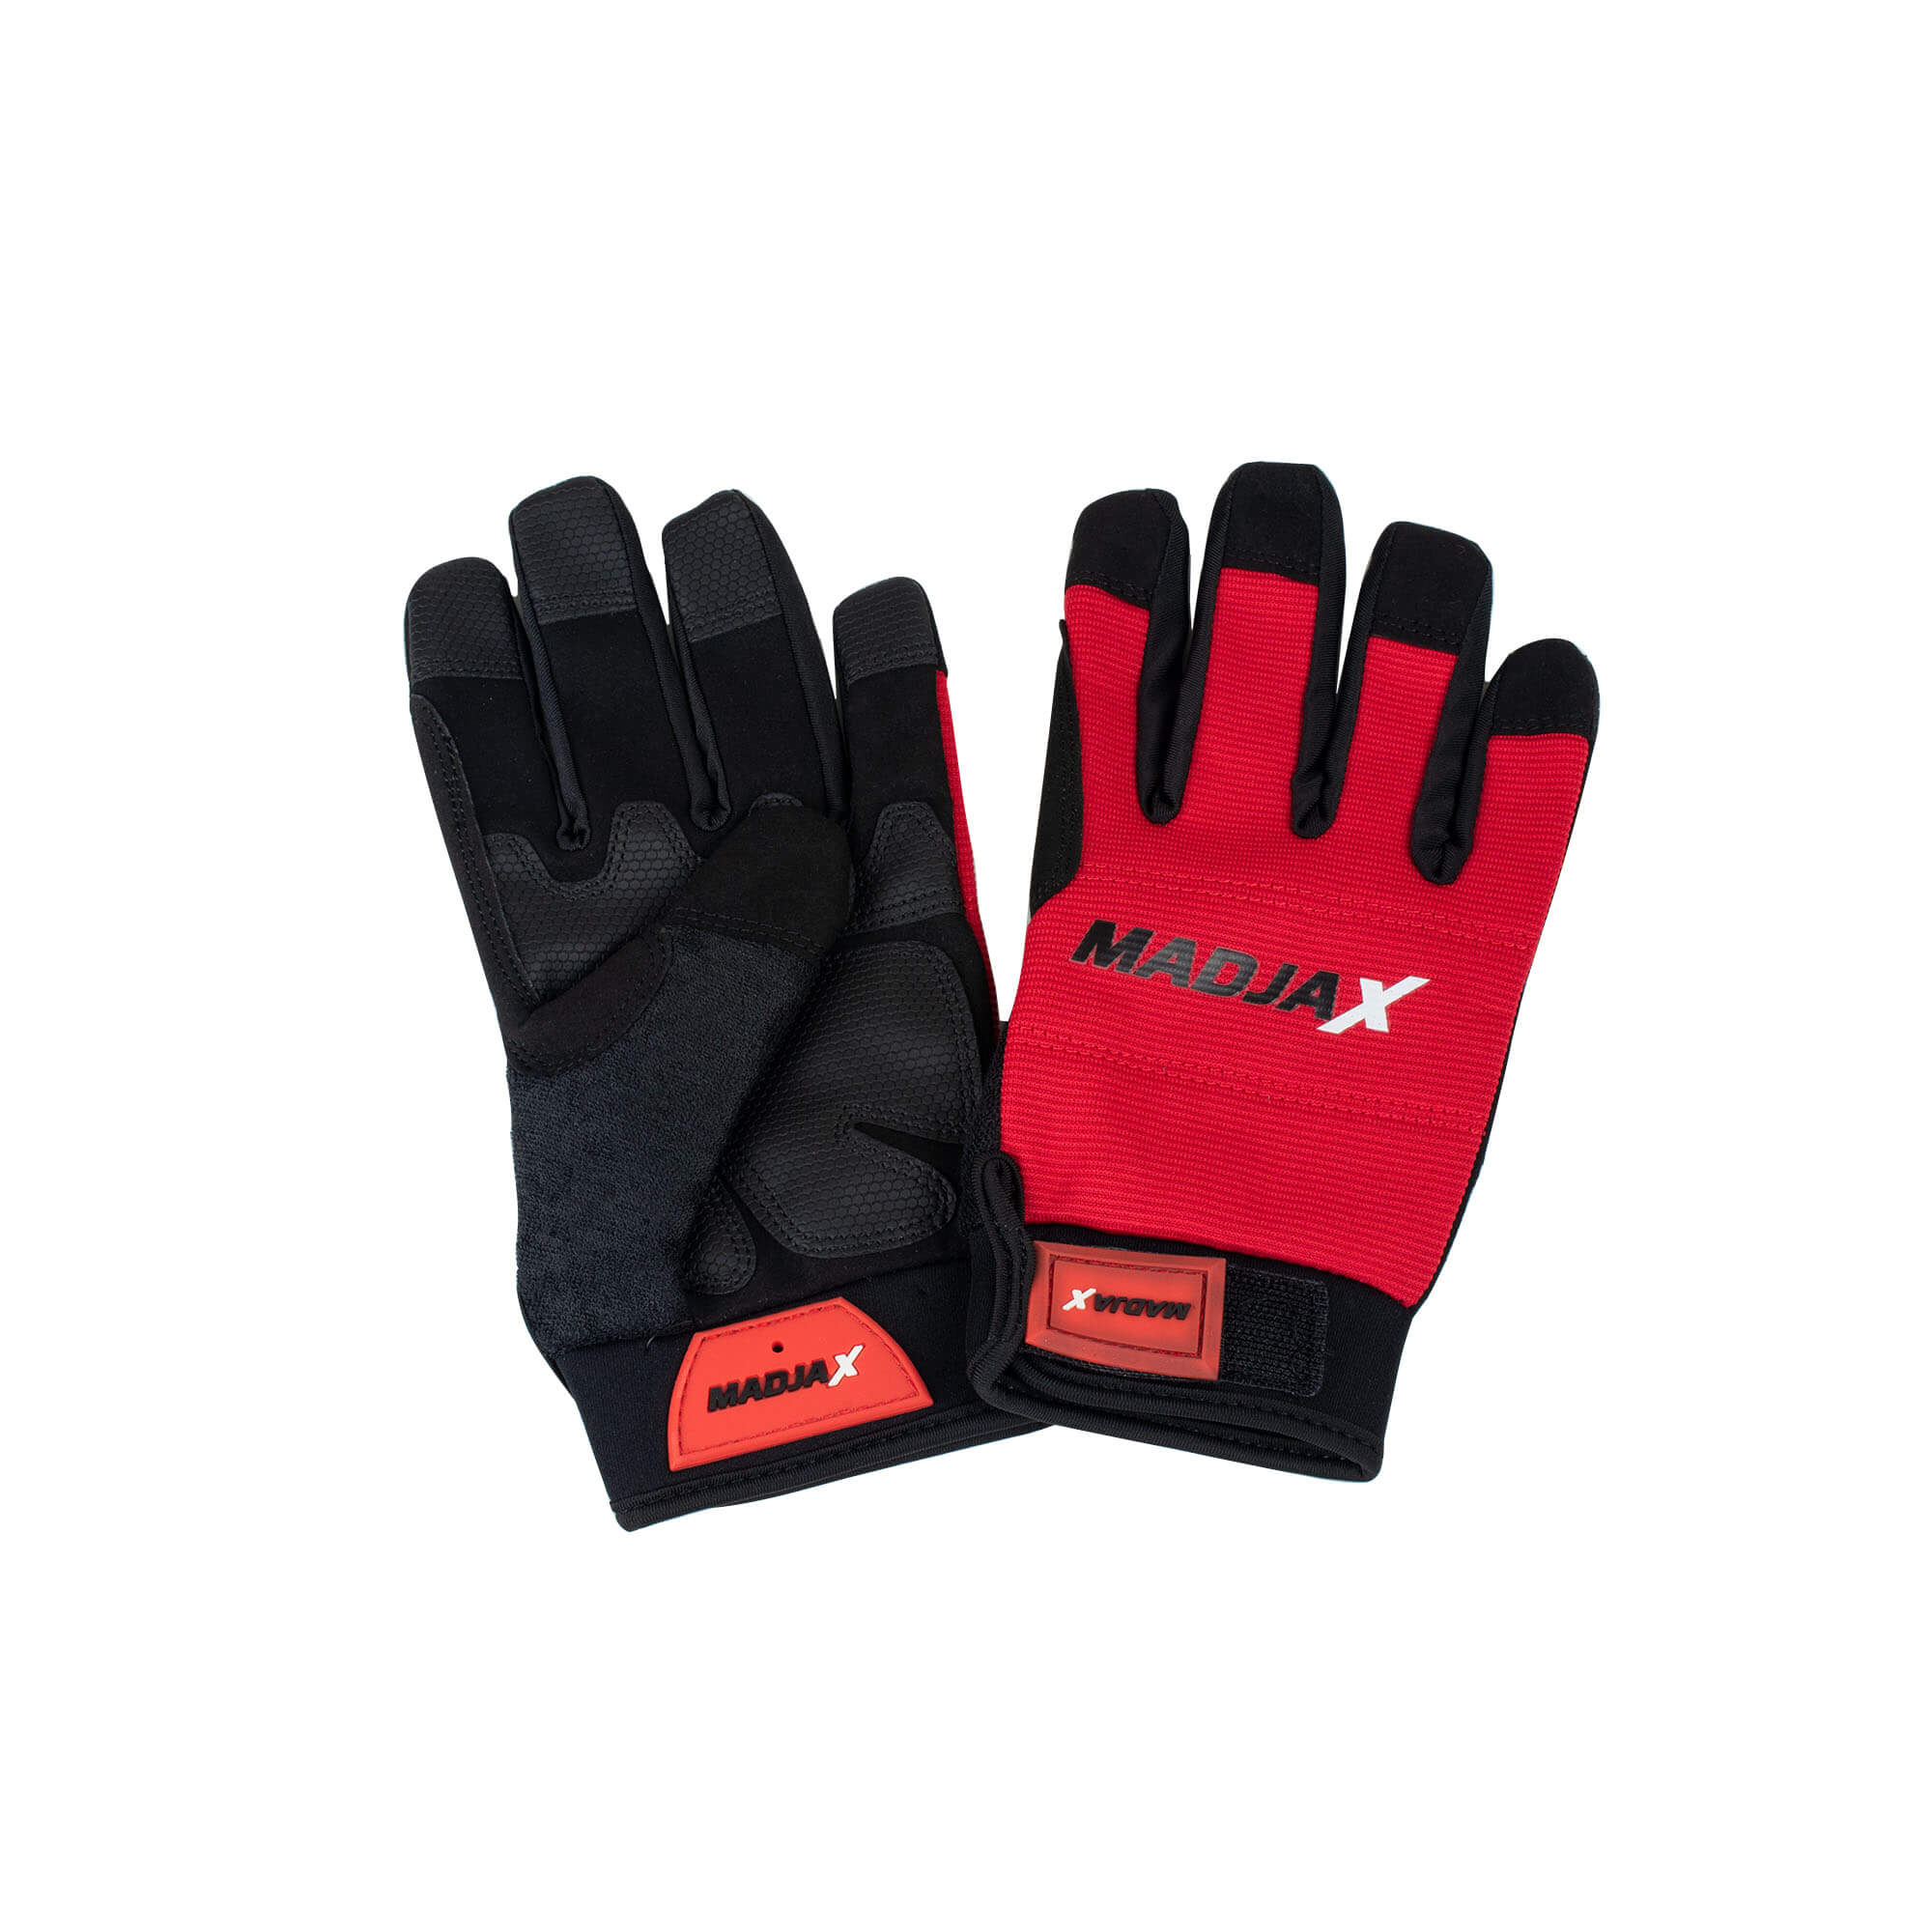 Madjax Work Gloves